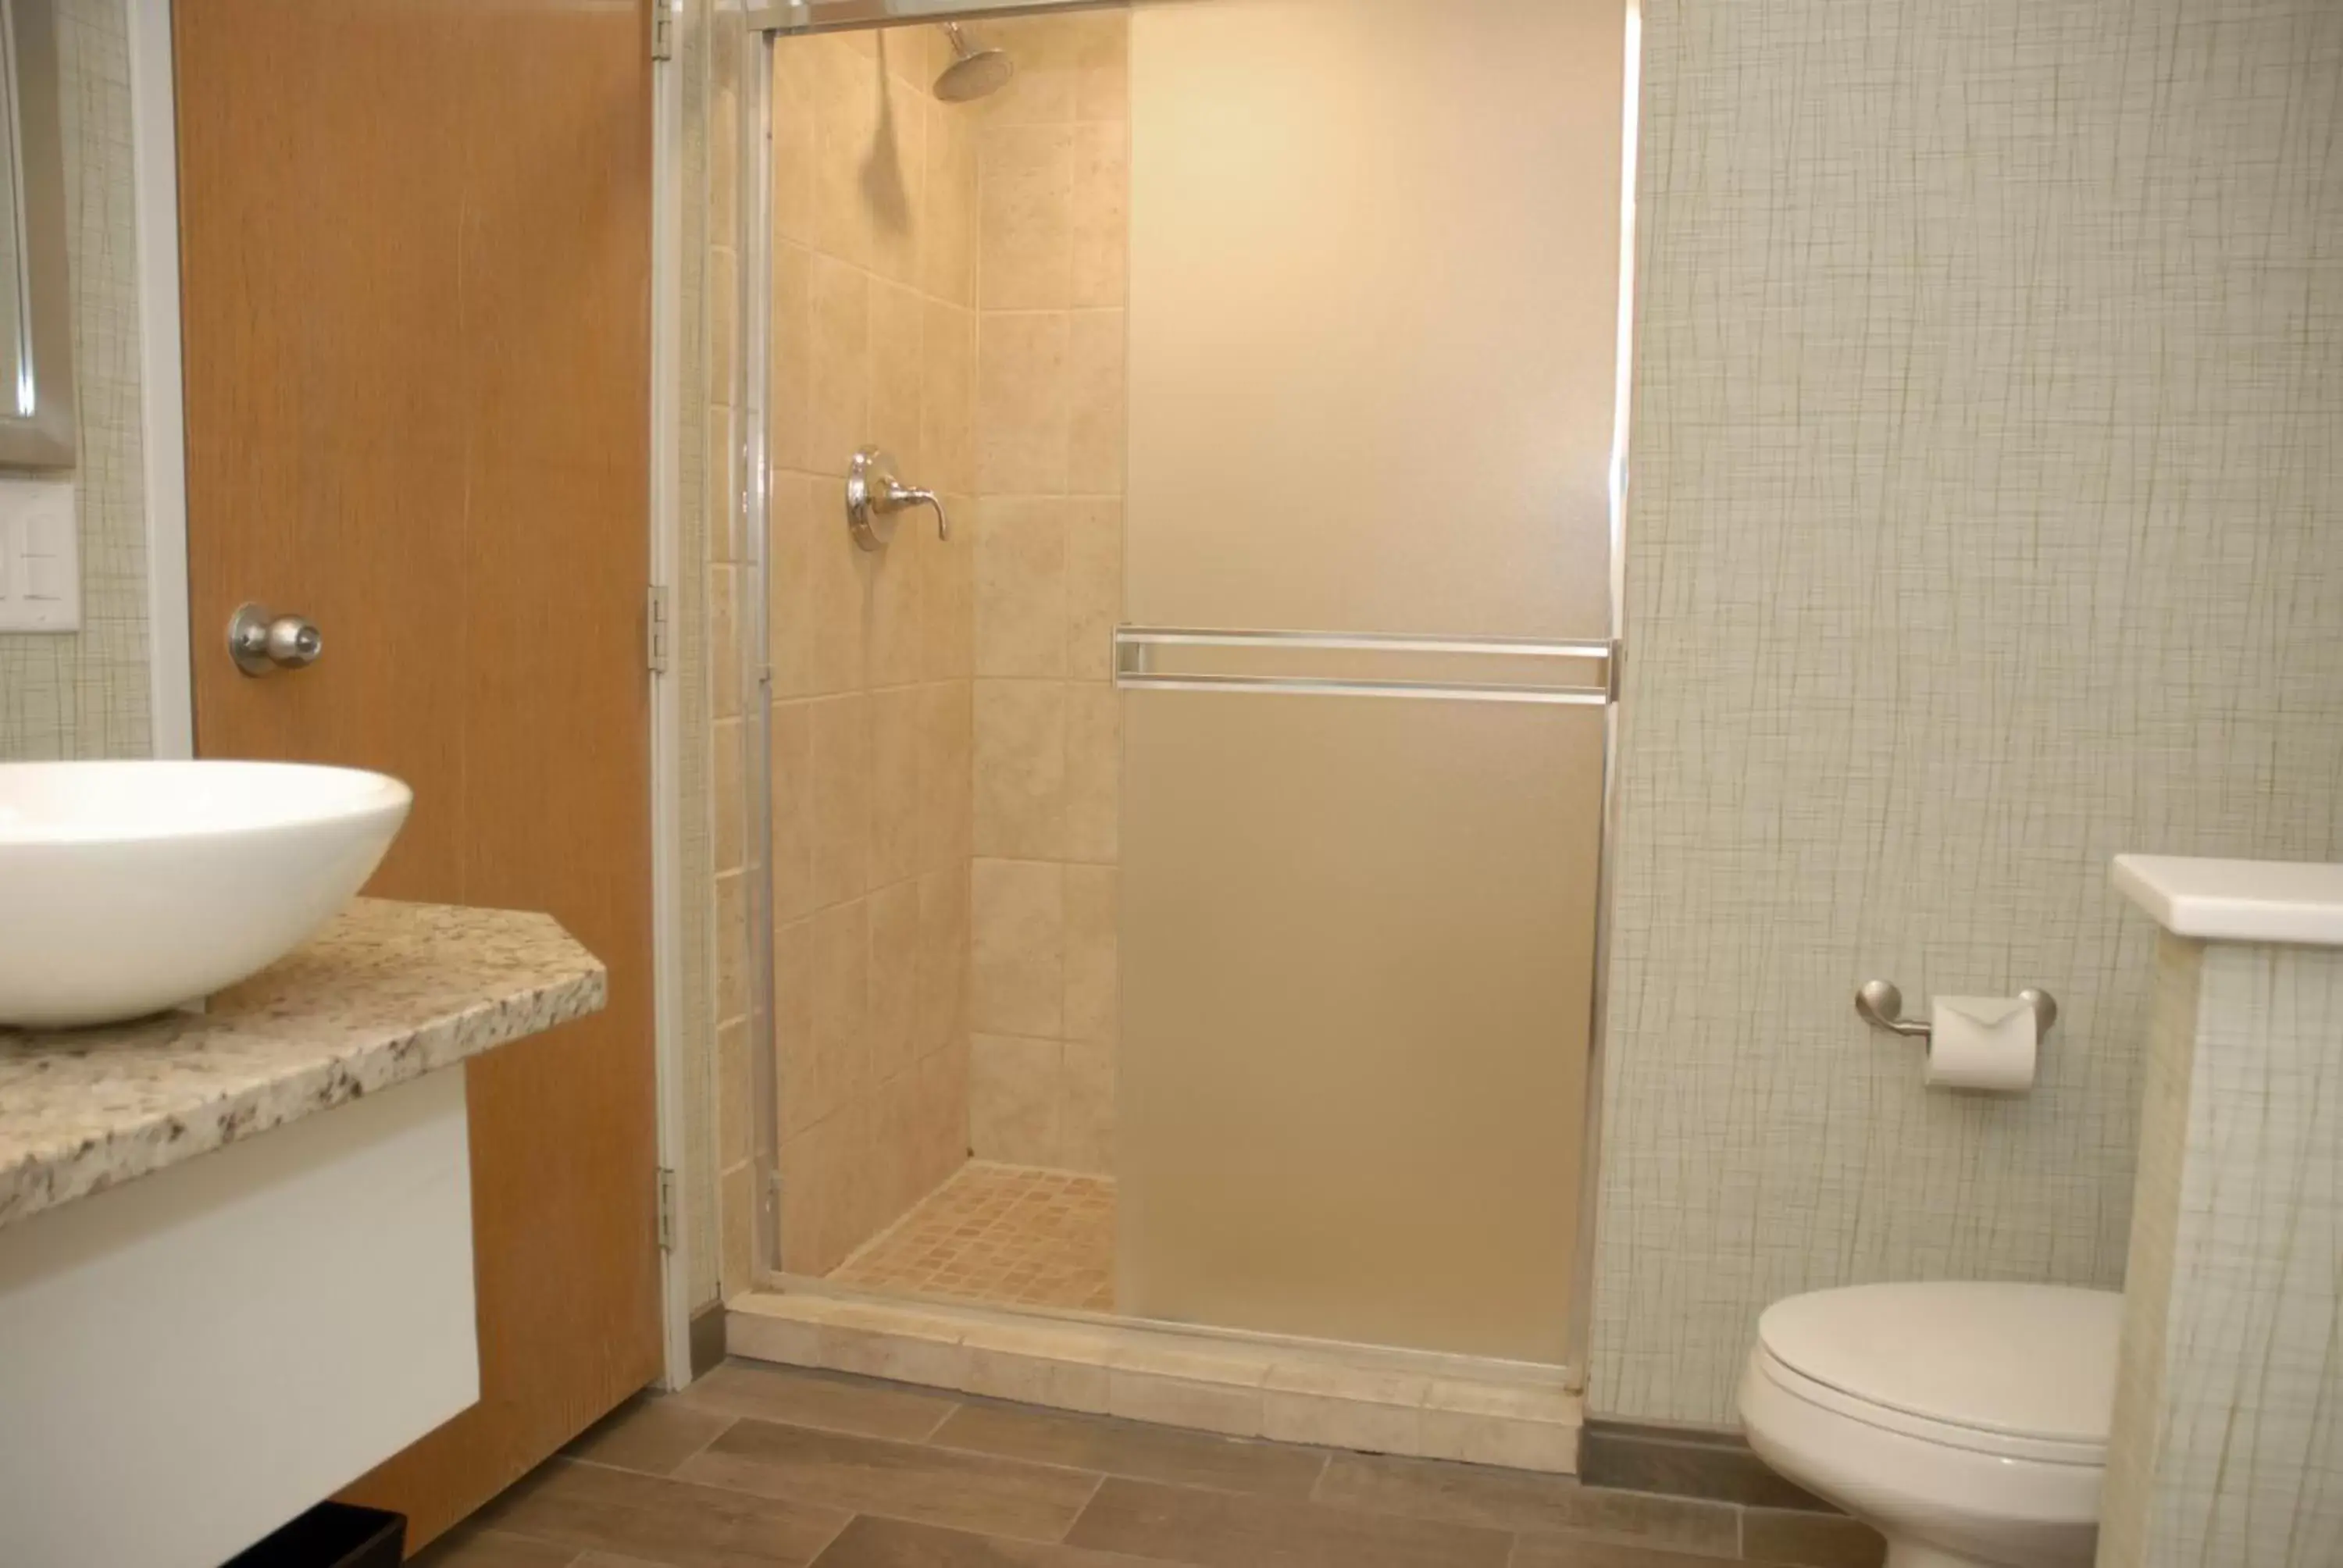 Bathroom in Sugar Beach Resort Hotel